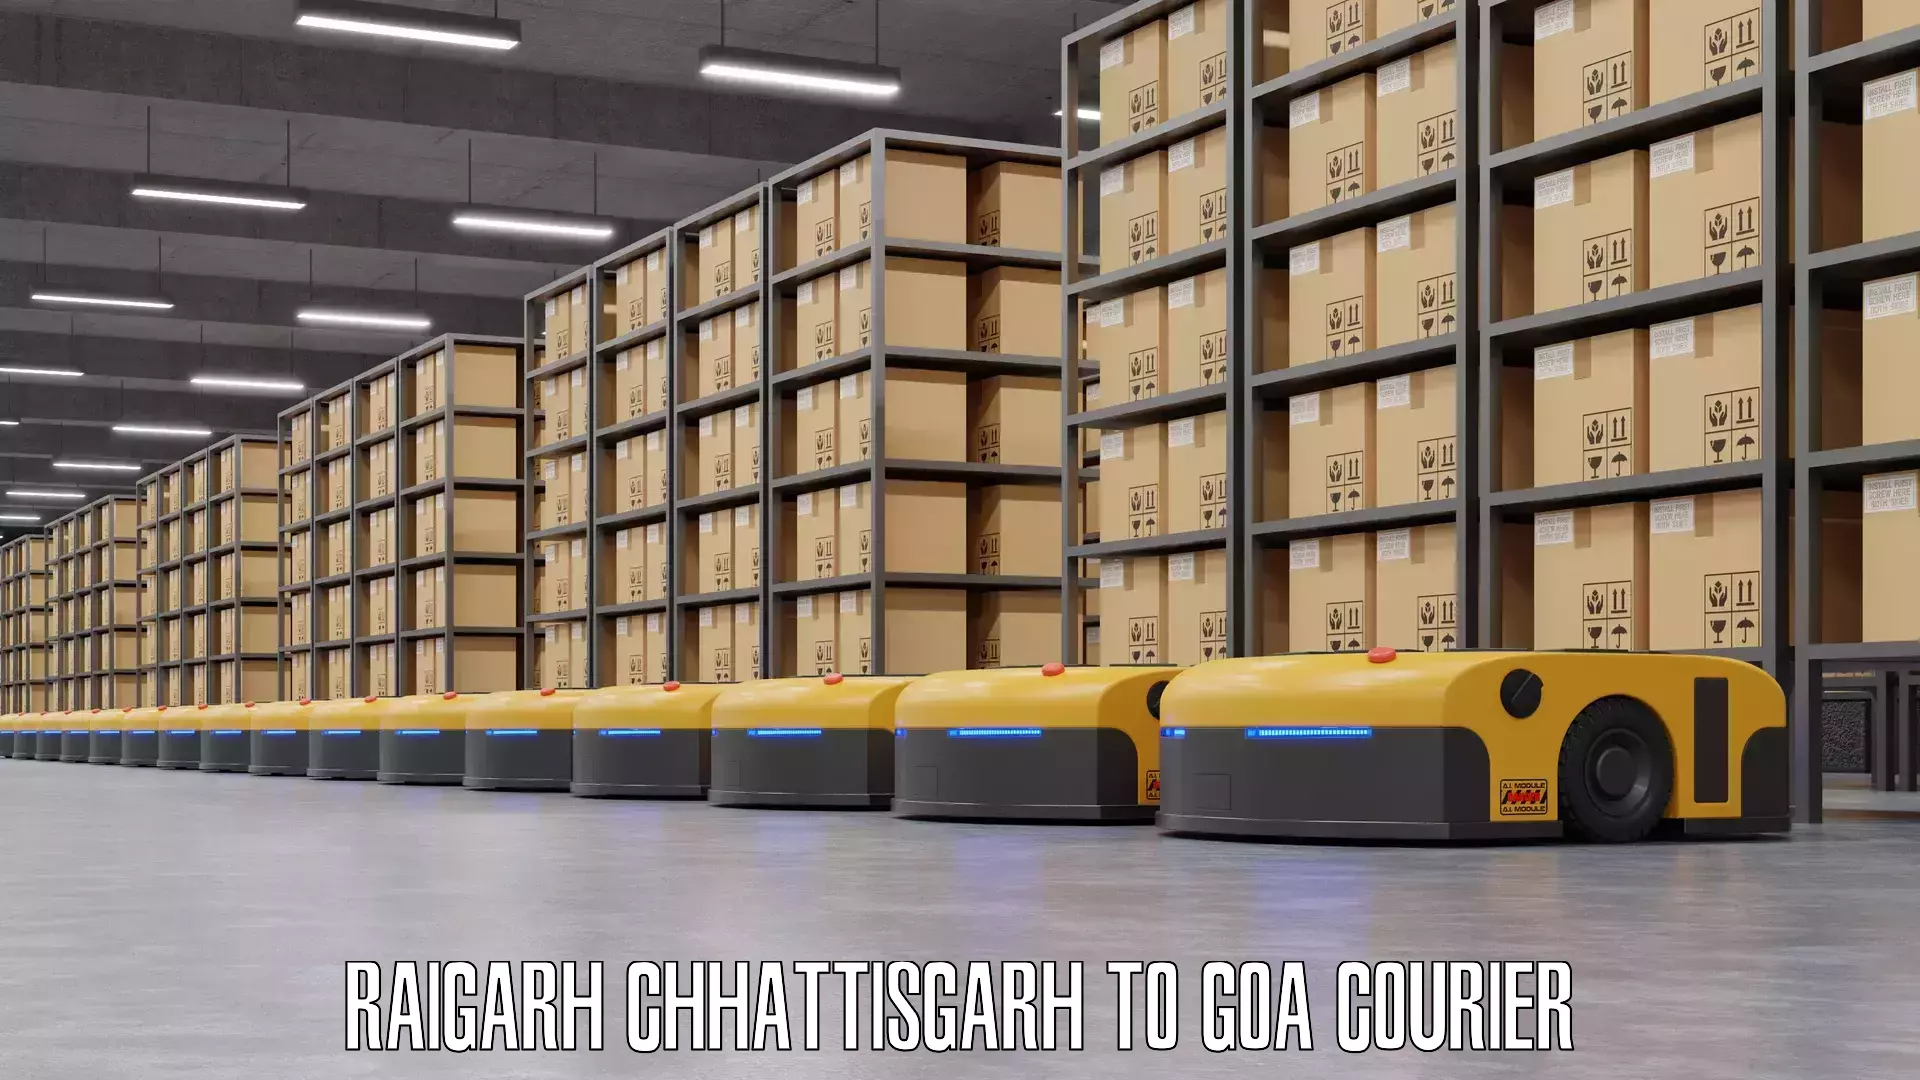 Baggage relocation service Raigarh Chhattisgarh to Goa